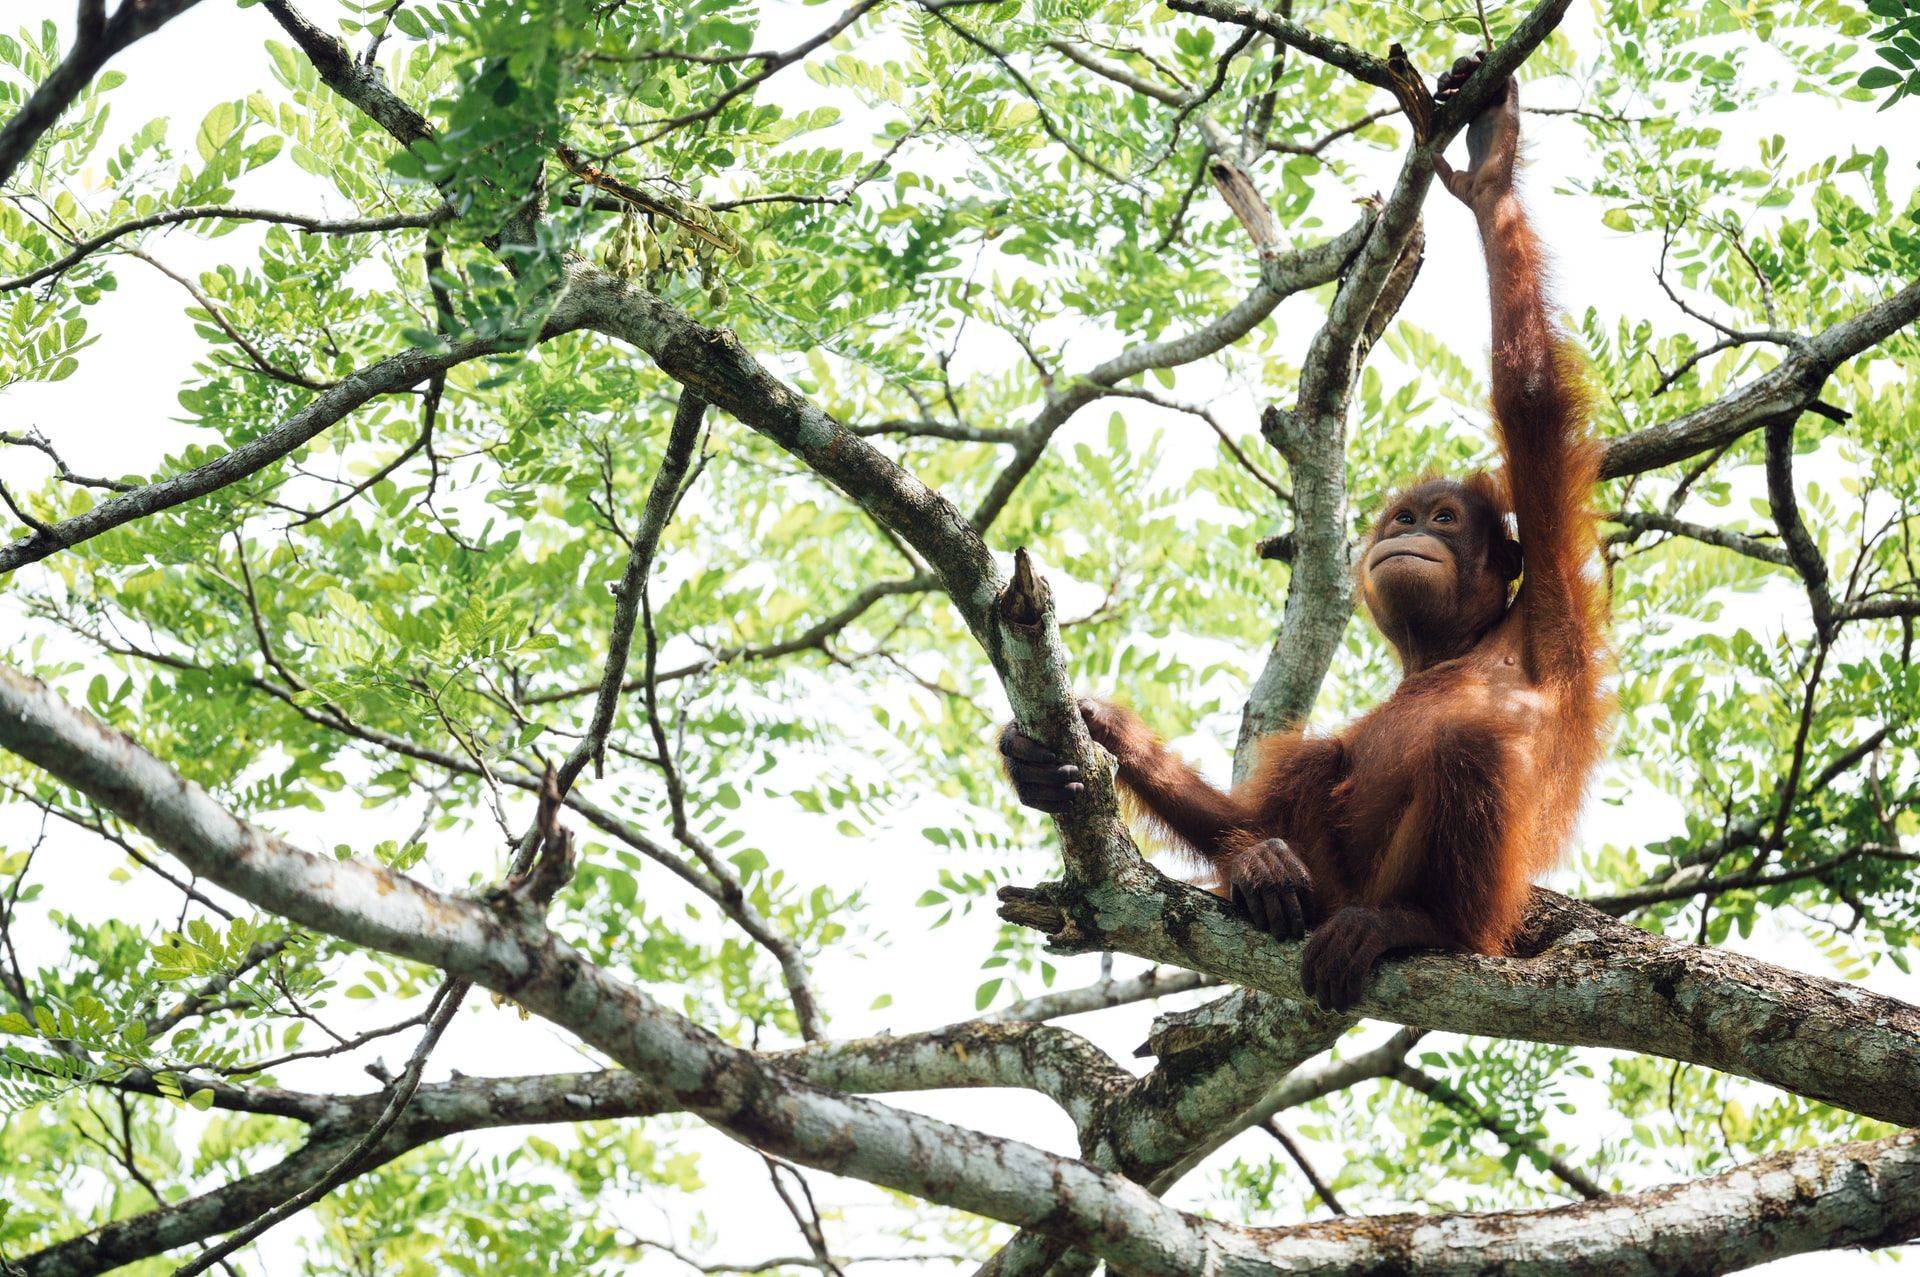 Visite du centre des orangs-outans et journée avec les indigènes de Bornéo